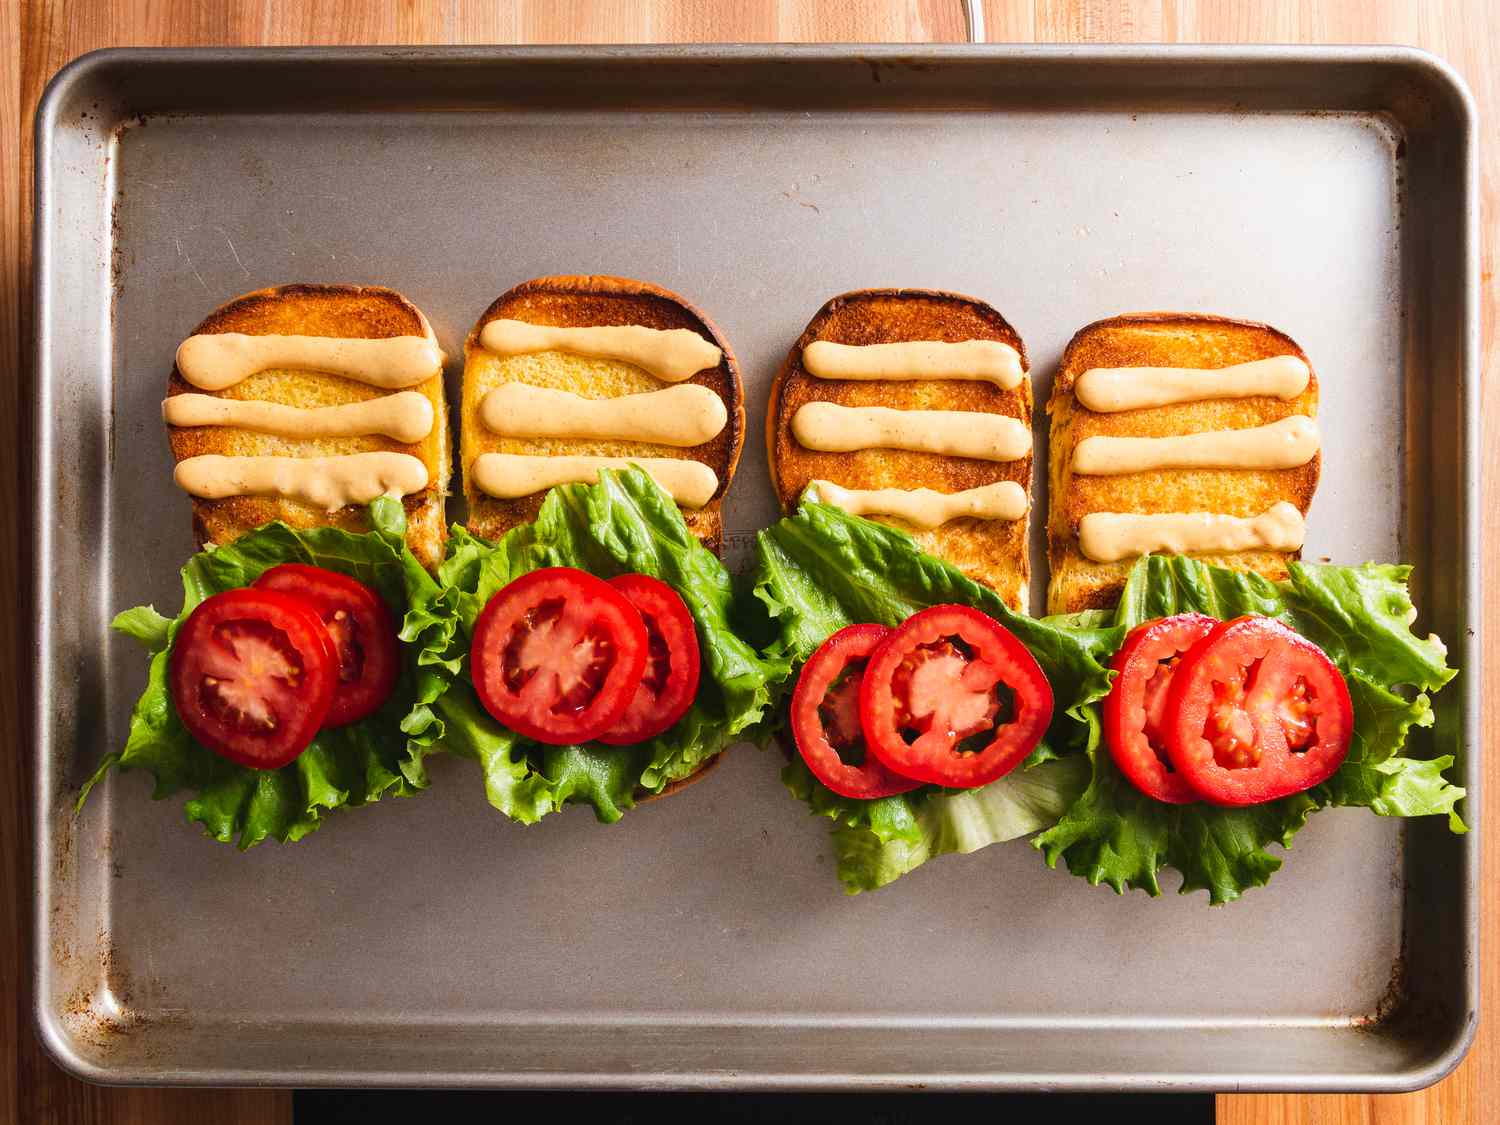 烤盘上放着四个烤好的汉堡面包，每个面包的上半部分涂上三行自制的Shack酱，下半部分涂上生菜和番茄。